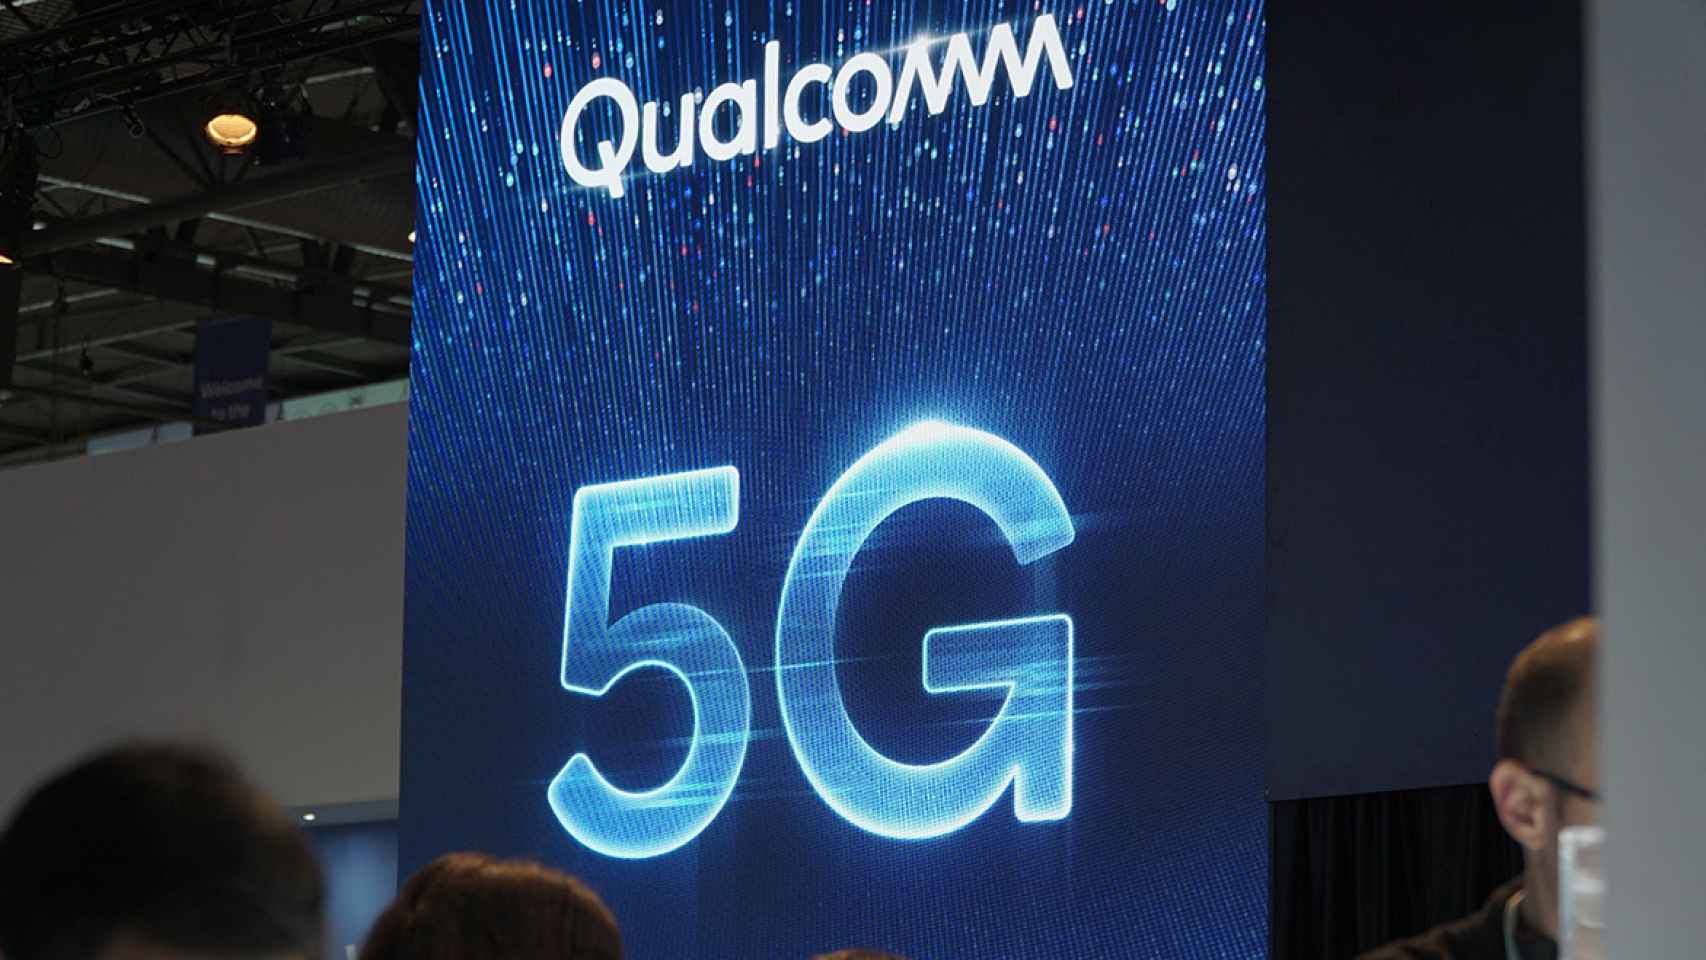 Qualcomm llevará la conectividad 5G a los Snapdragon 400